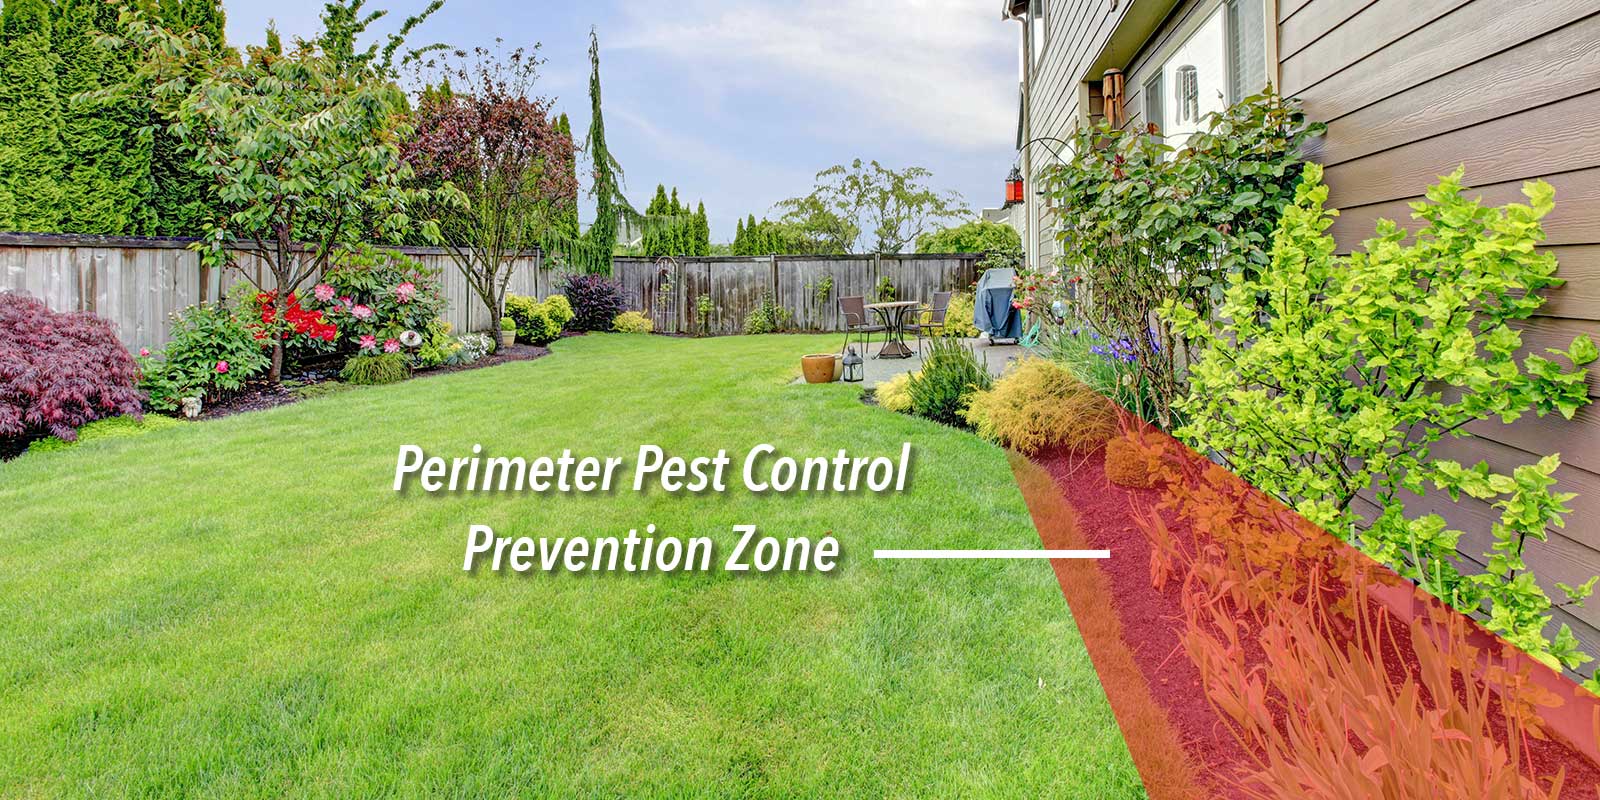 Perimeter Pest Control Prevention Zone